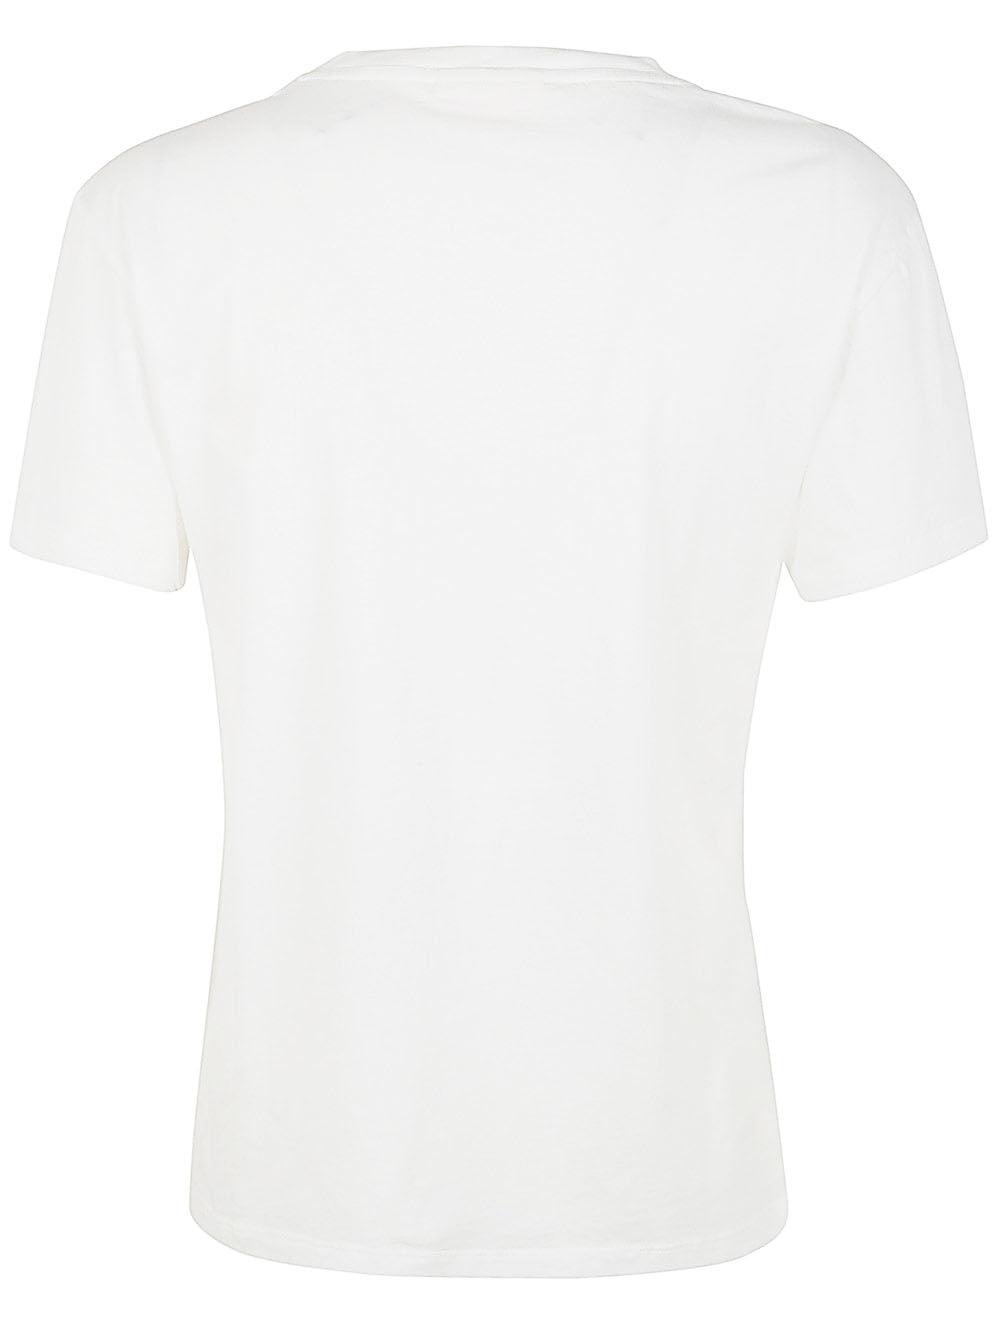 Cotton Crew Neck T-shirt